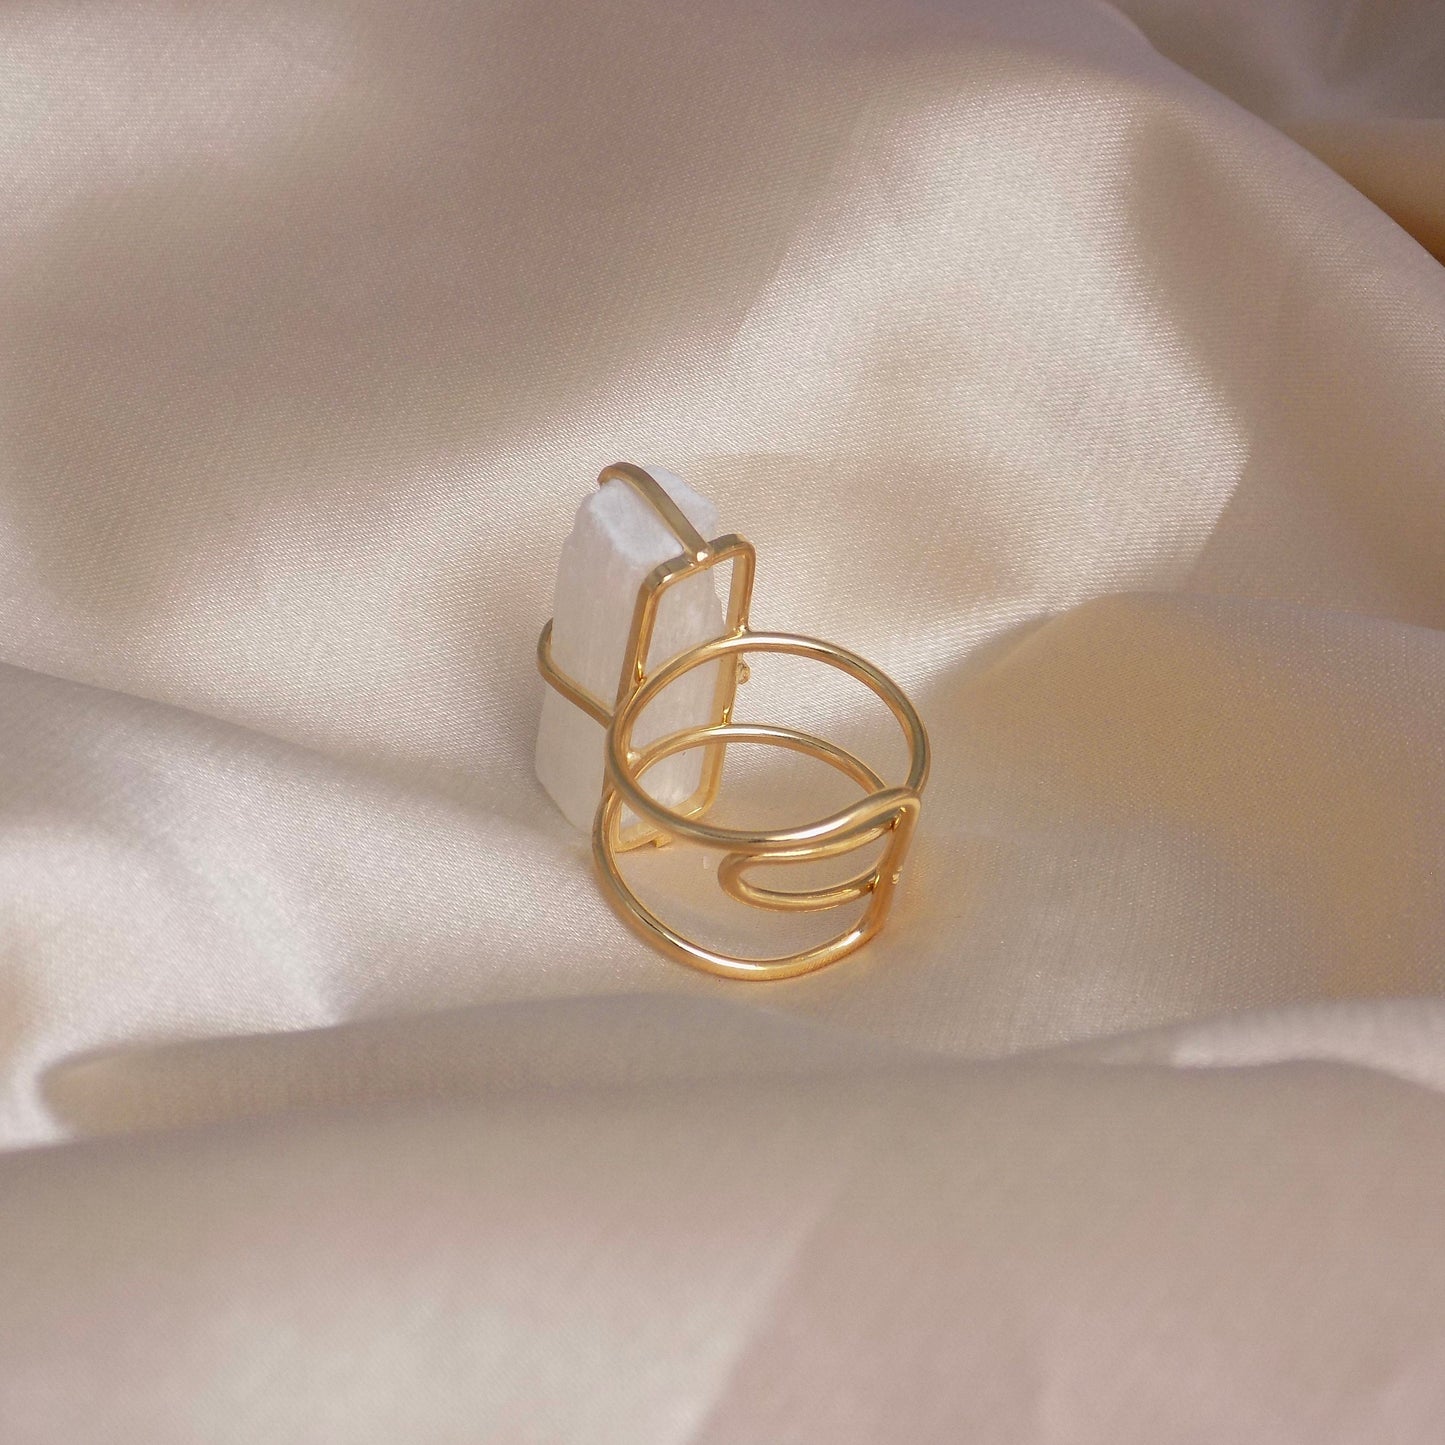 White Selenite Ring Gold, Raw Chakra Crystal Ring, Large Natural Gemstone Adjustable, Gift Women, G15-80